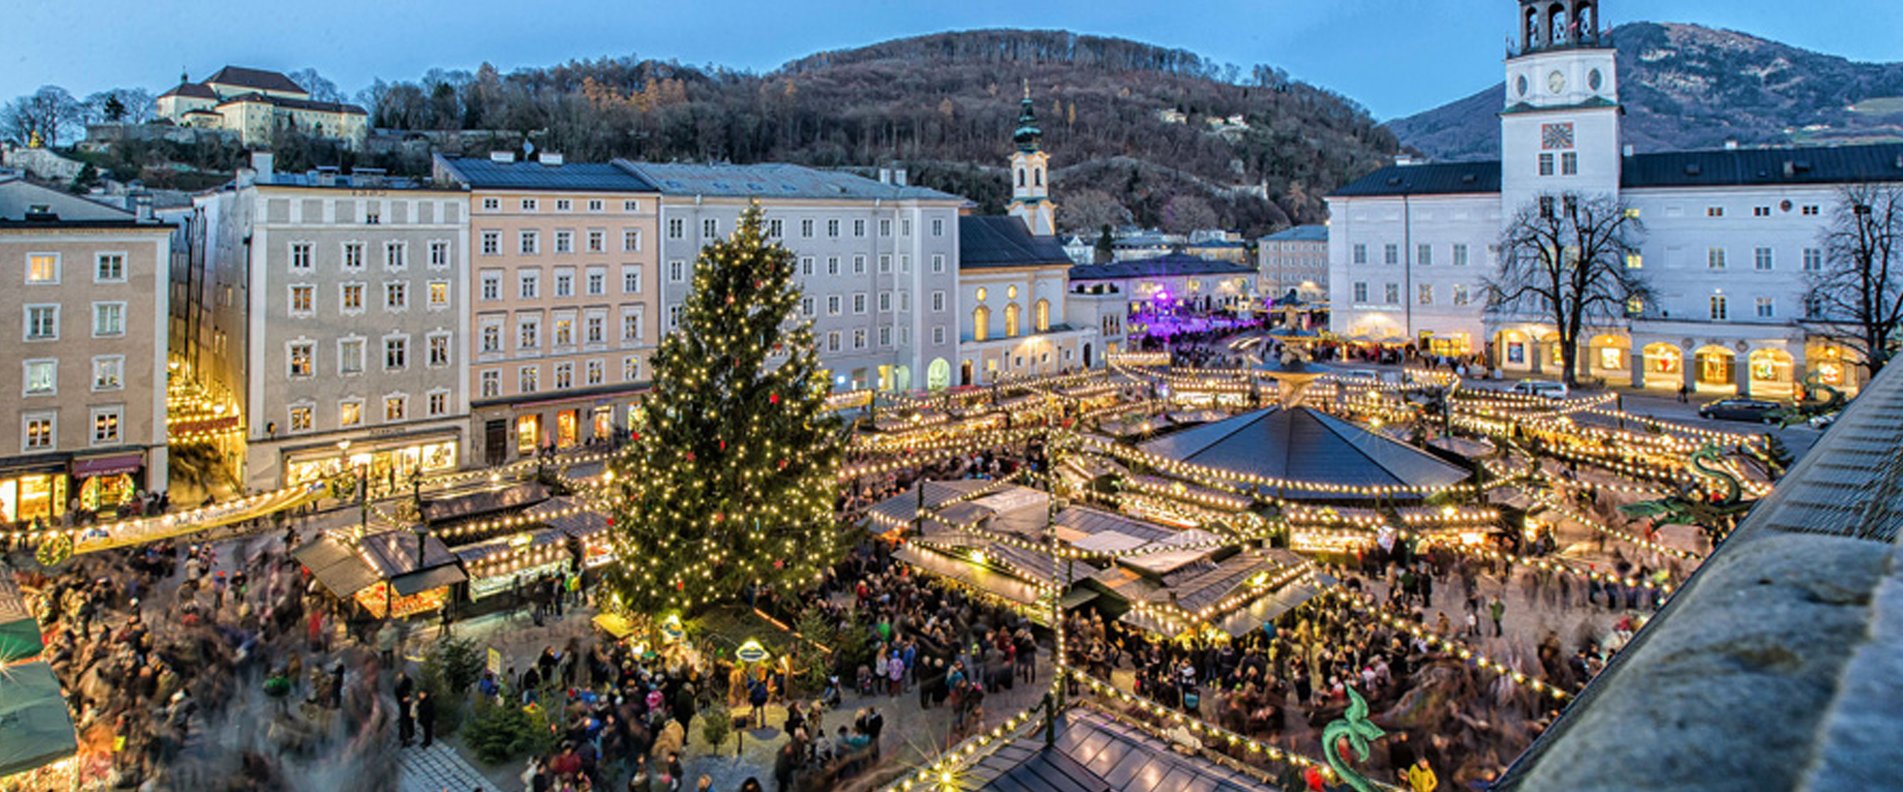 © www.christkindlmarkt.co.at, Salzburg